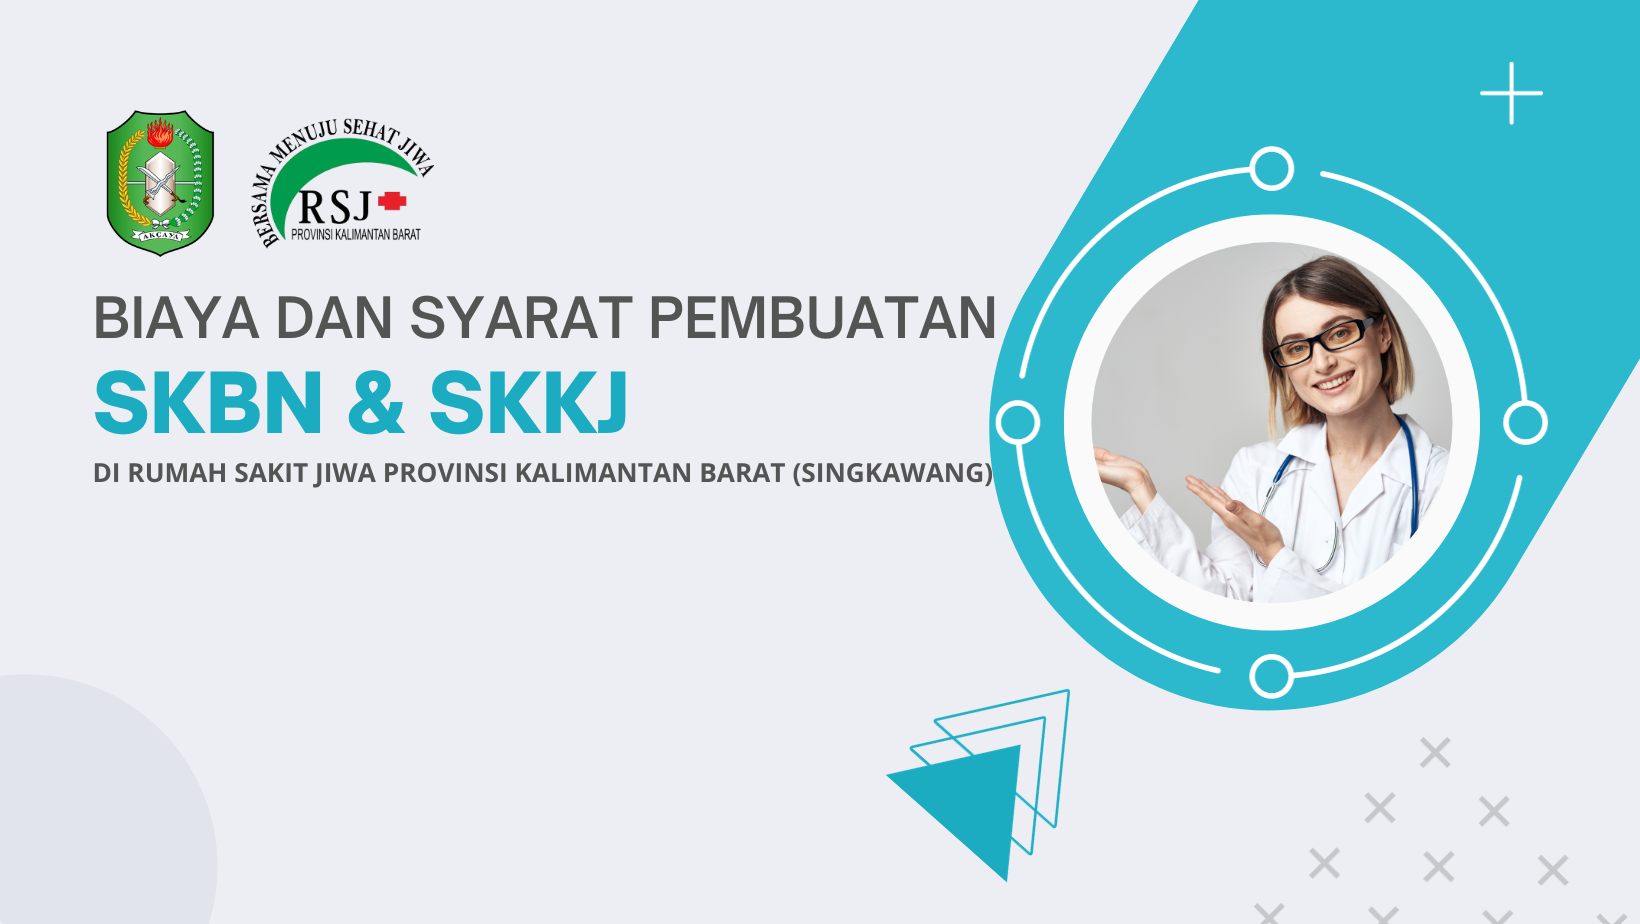 Biaya dan Syarat Pembuatan SKKJ dan SKBN DI Rumah Sakit Jiwa Provinsi Kalimantan Barat